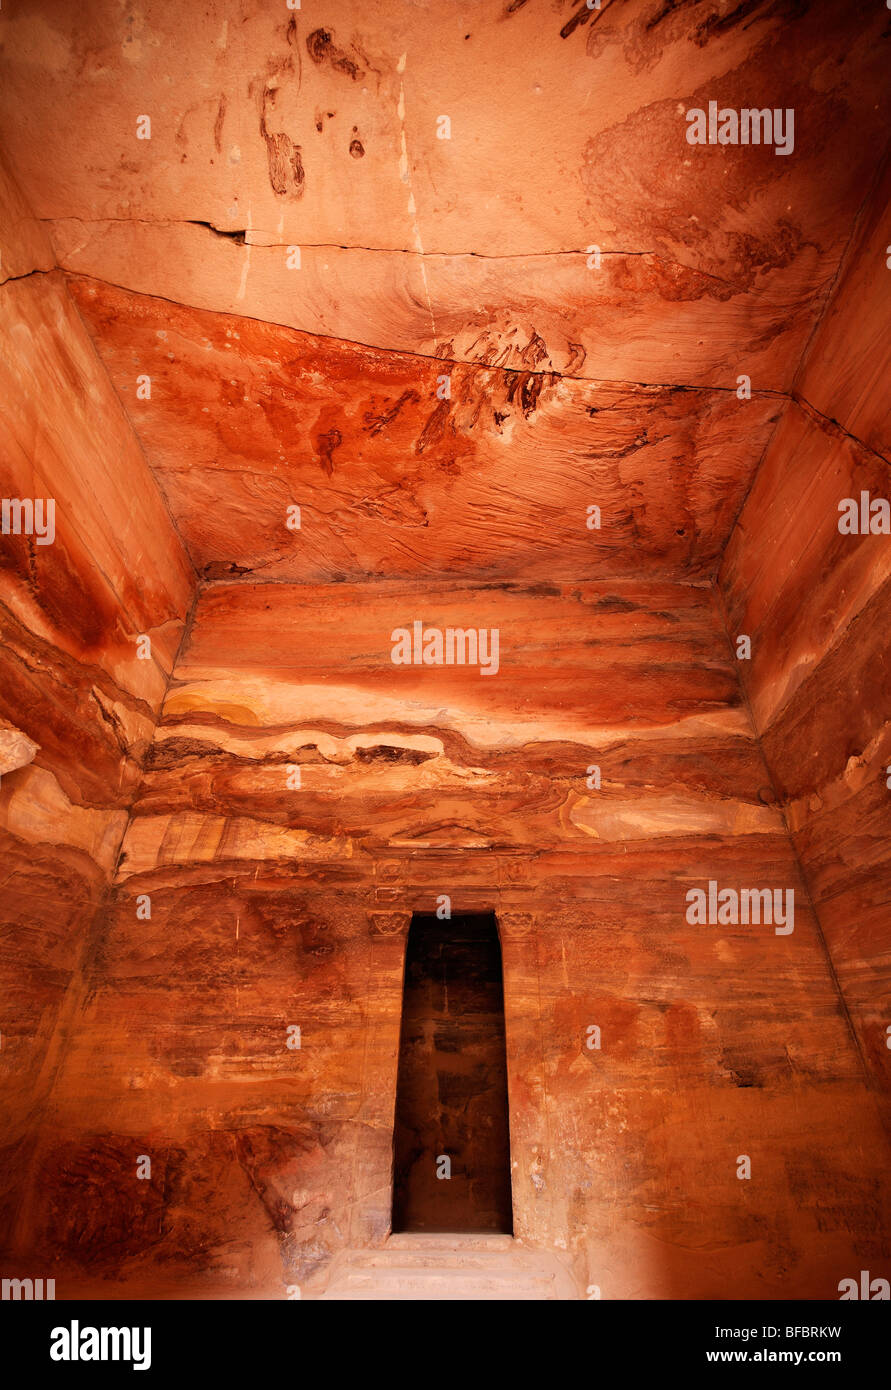 El Kahzneh (El Tesoro) tumba interior en Petra, con diseños de arenisca roja natural, Jordania Foto de stock